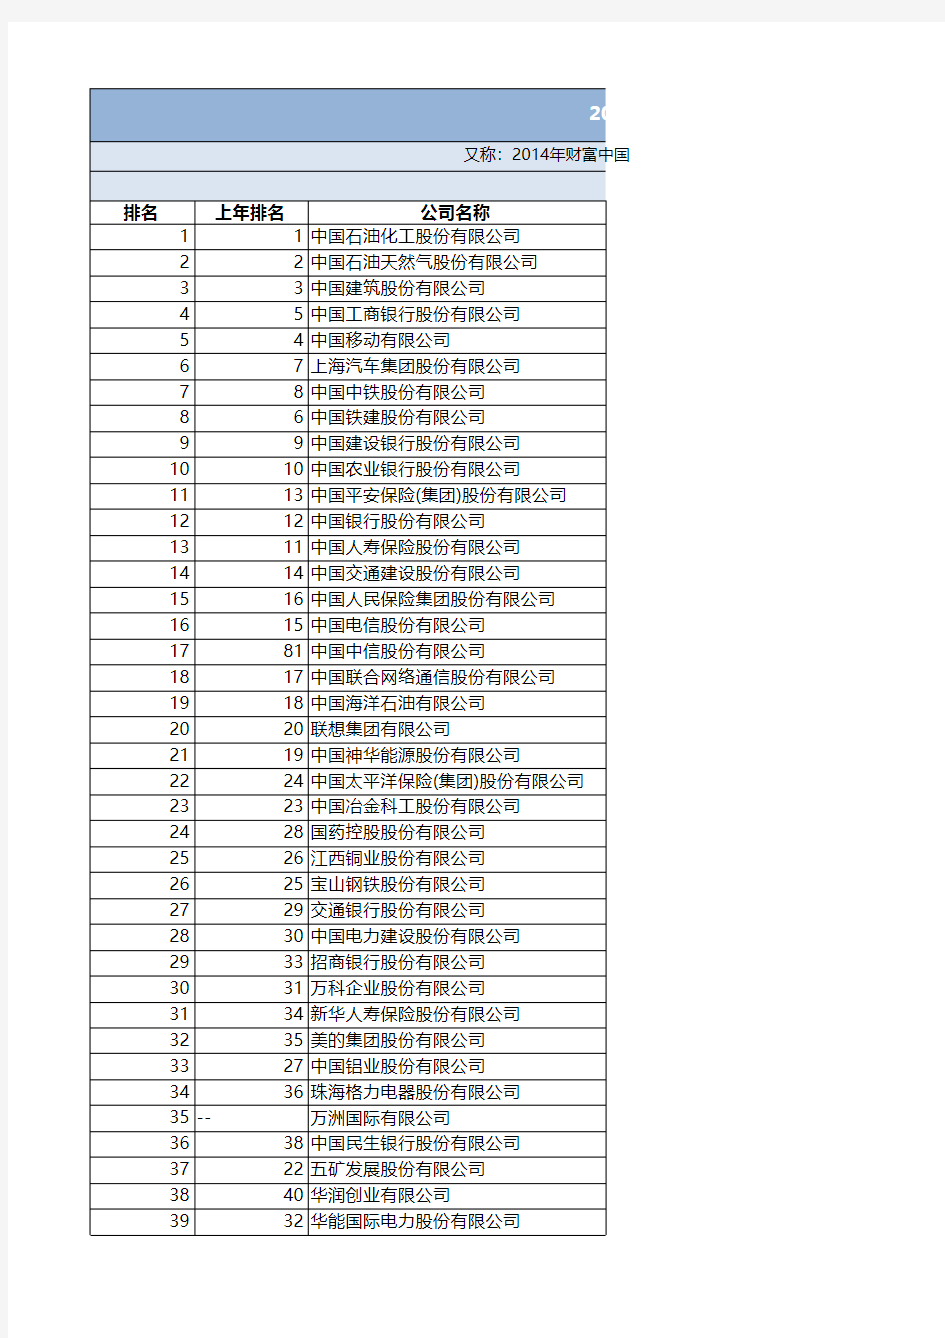 2015财富中国500强排行(Excel整理版)